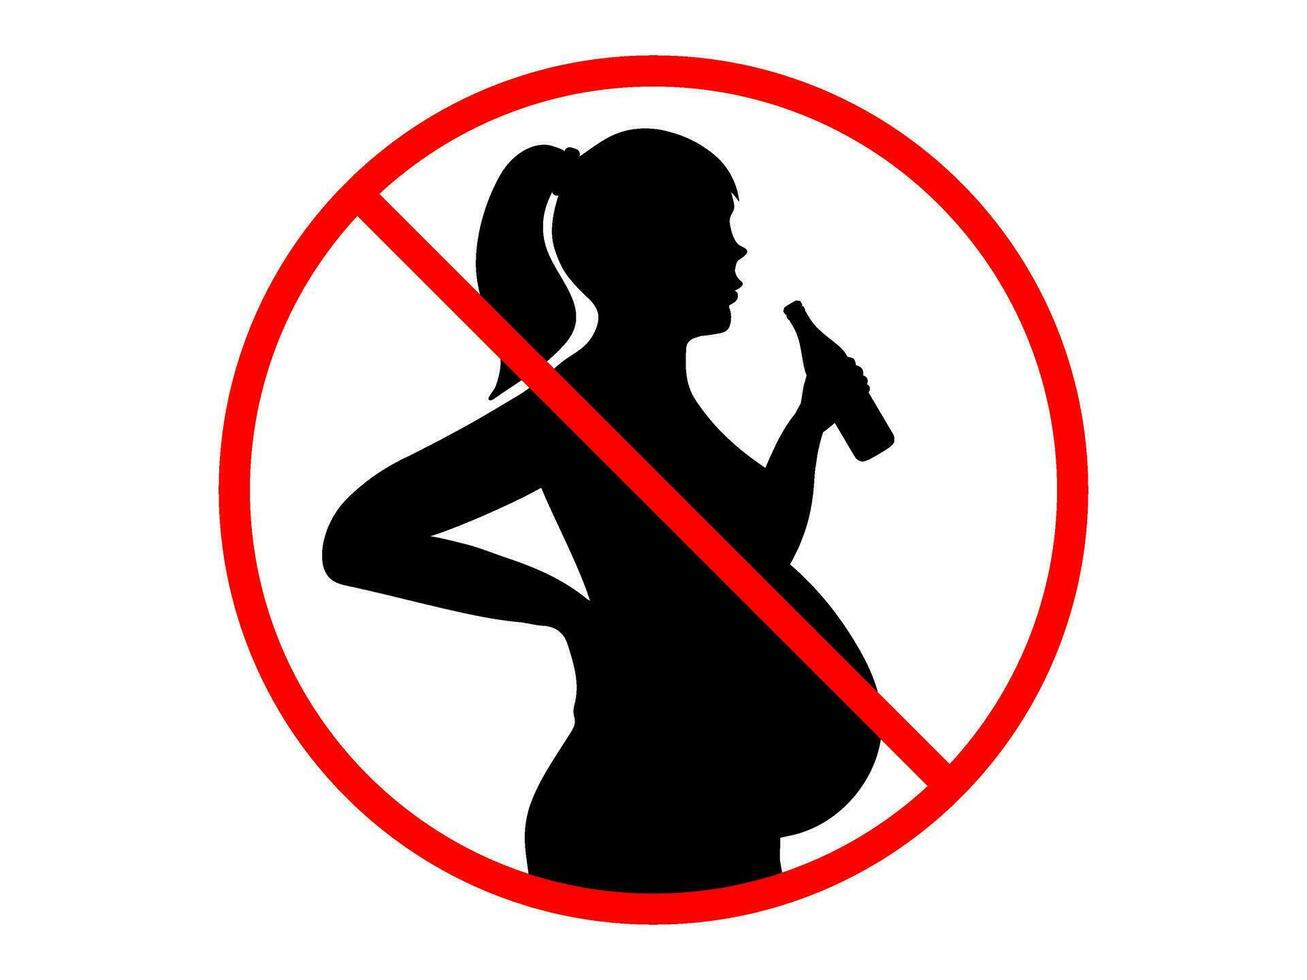 verbod teken van zwanger vrouw drinken alcohol. zwanger vrouw met fles van bier in hand. vector icoon voor alcohol fles